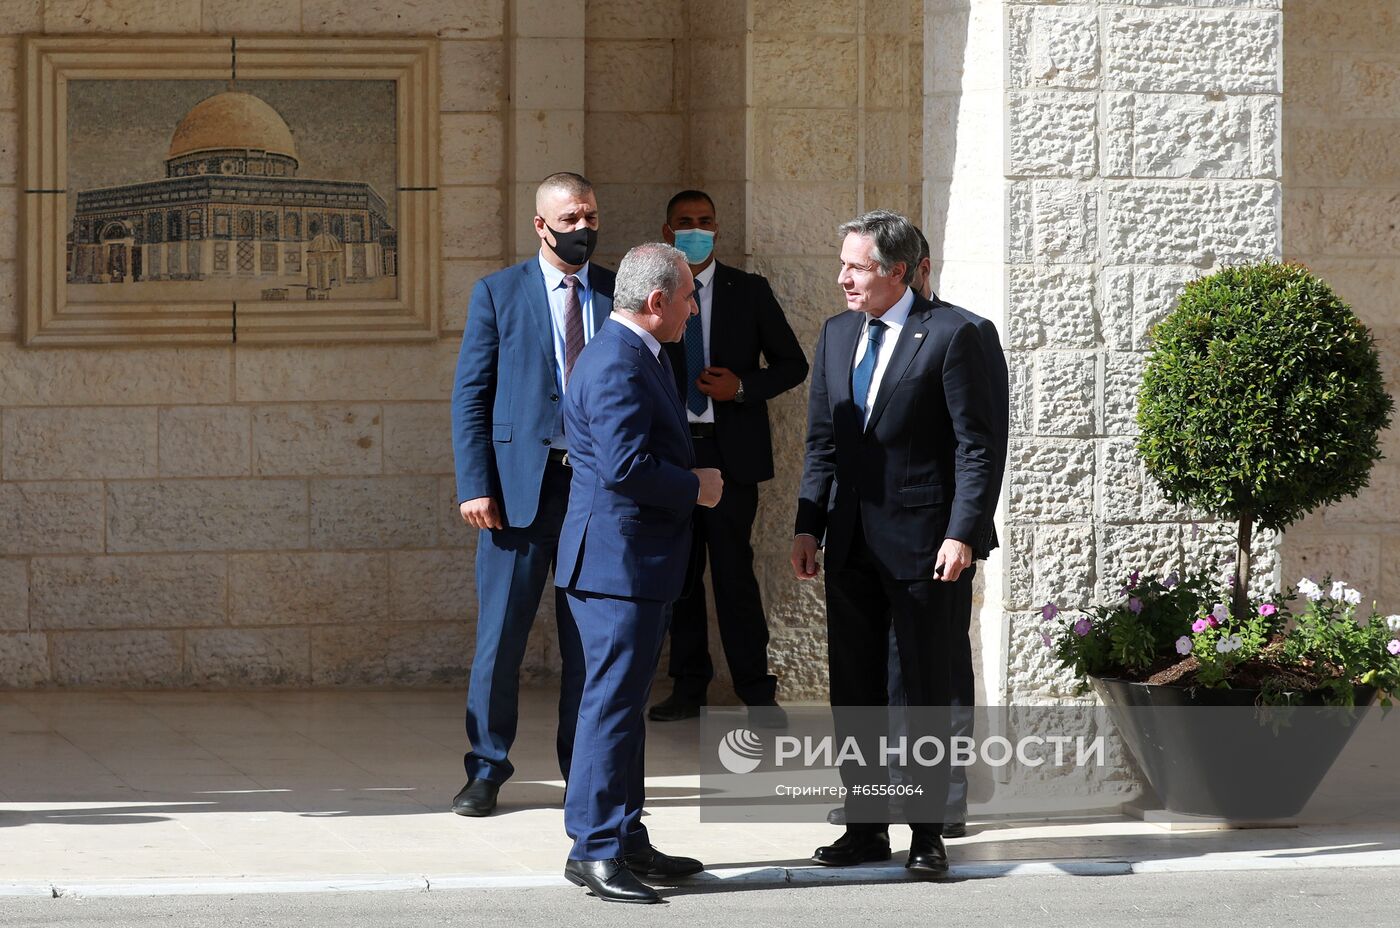 Встреча президента Палестины М. Аббаса и госсекретаря США Э. Блинкена